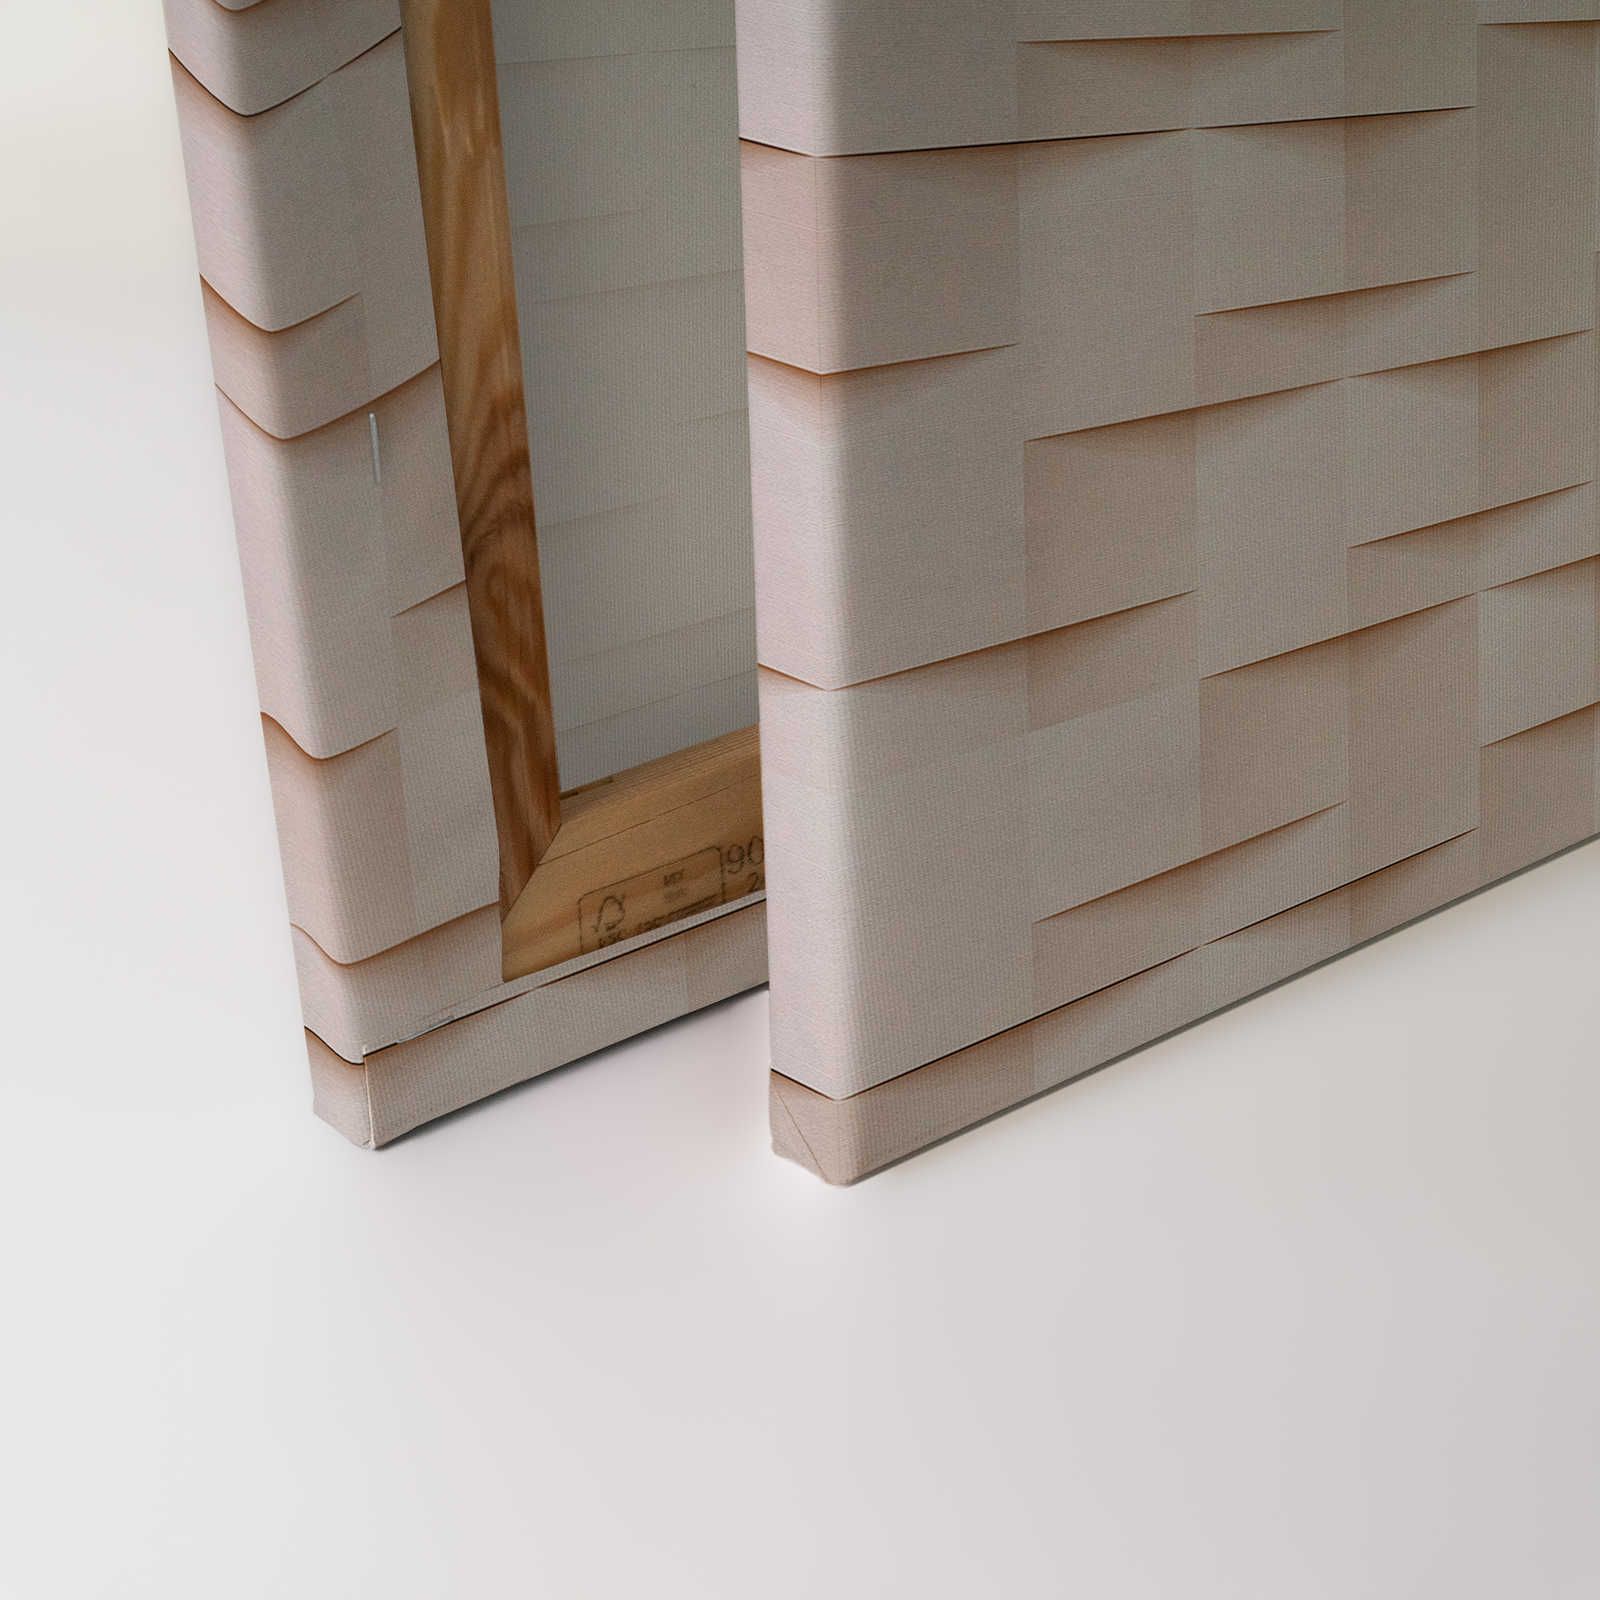             Casa di carta 1 - Pittura su tela 3D struttura di carta origami pieghevole - 0,90 m x 0,60 m
        